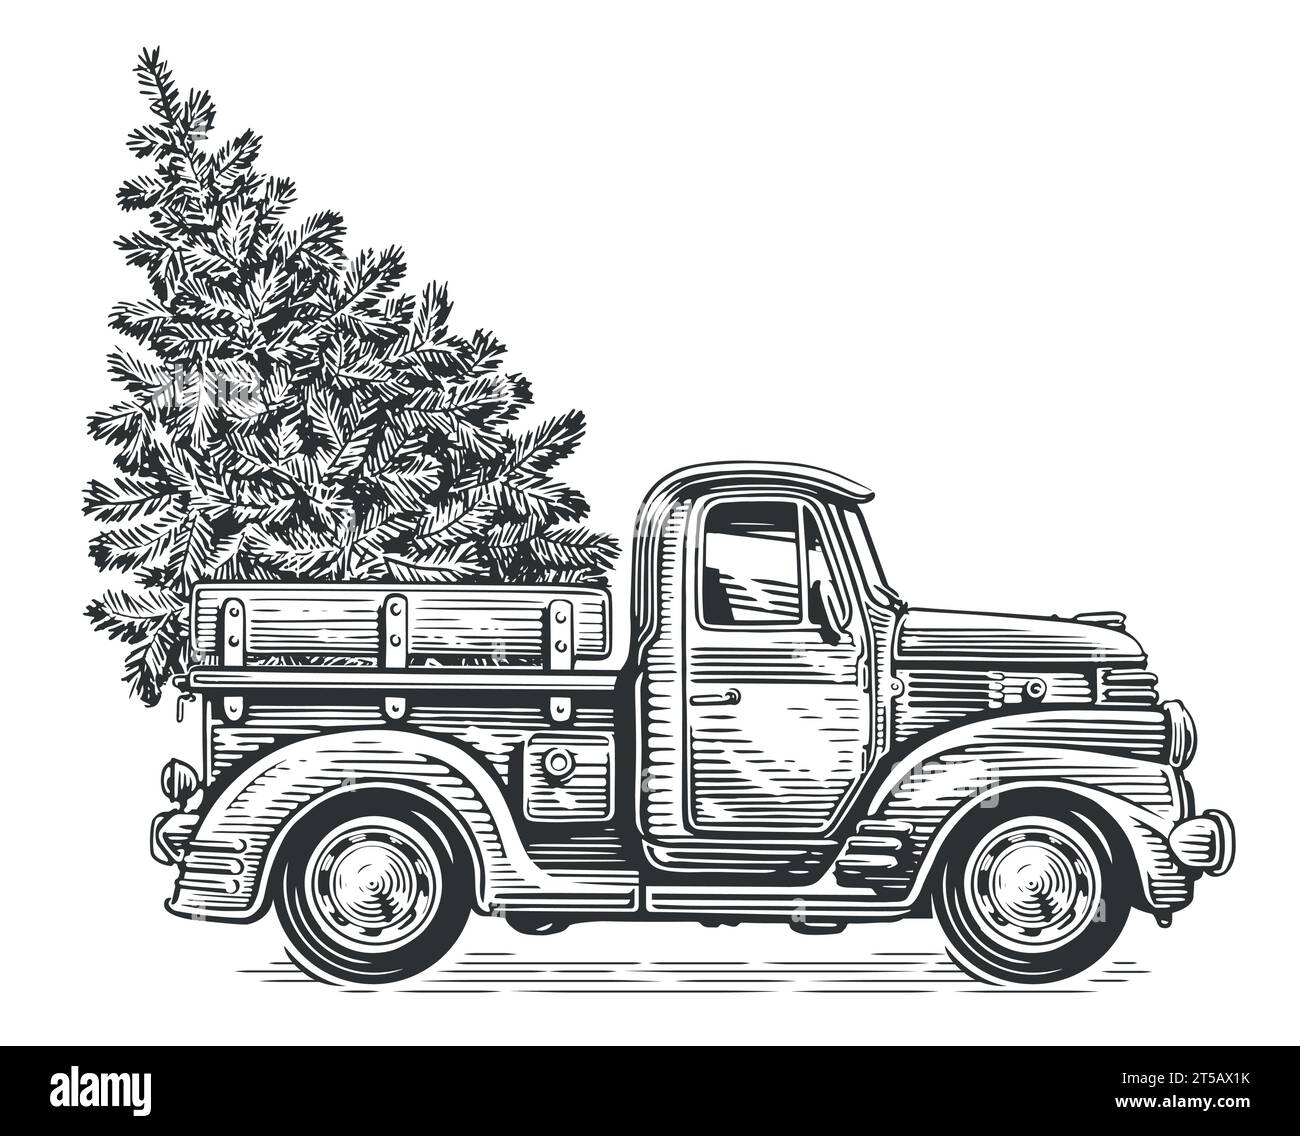 Carrello retrò natalizio con pino in stile sketch. Illustrazione vettoriale vintage disegnata a mano Illustrazione Vettoriale